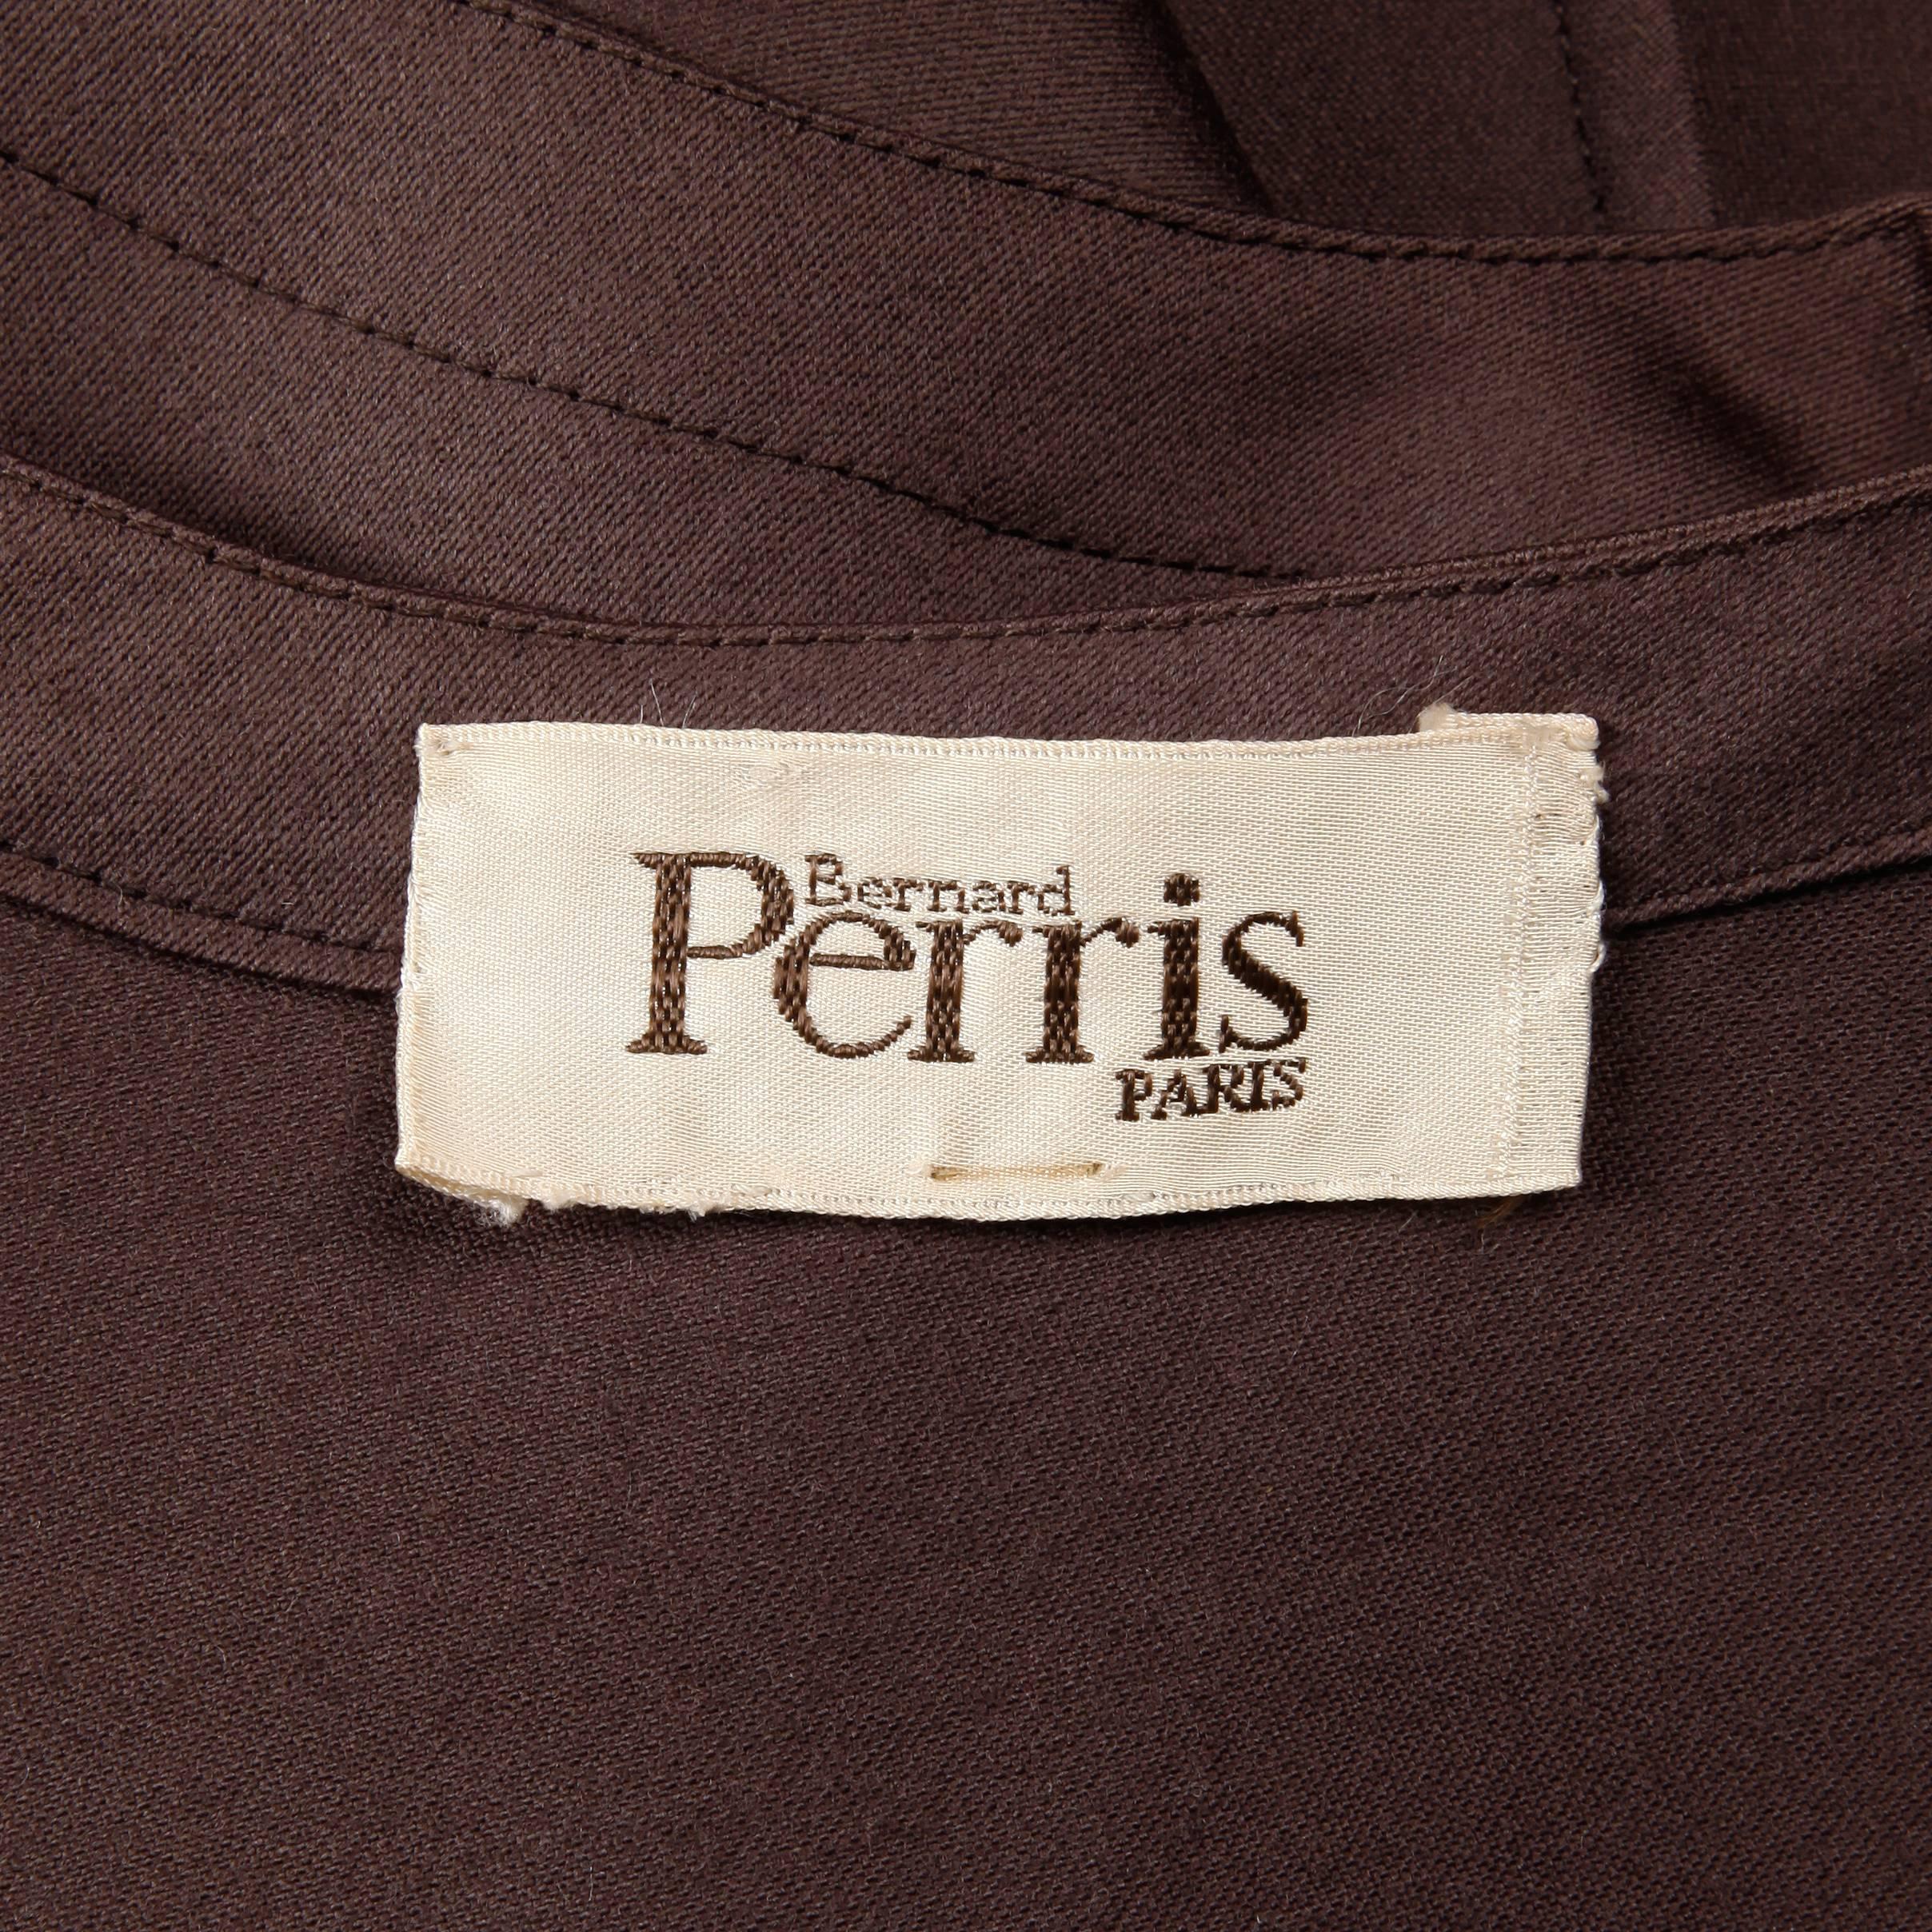 Magnifique cape / manteau vintage de Bernard Perris dans ce qui semble être un mélange de laine et de soie marron. Ce manteau est asymétrique et comporte une manche 3/4 d'un côté et une manche 